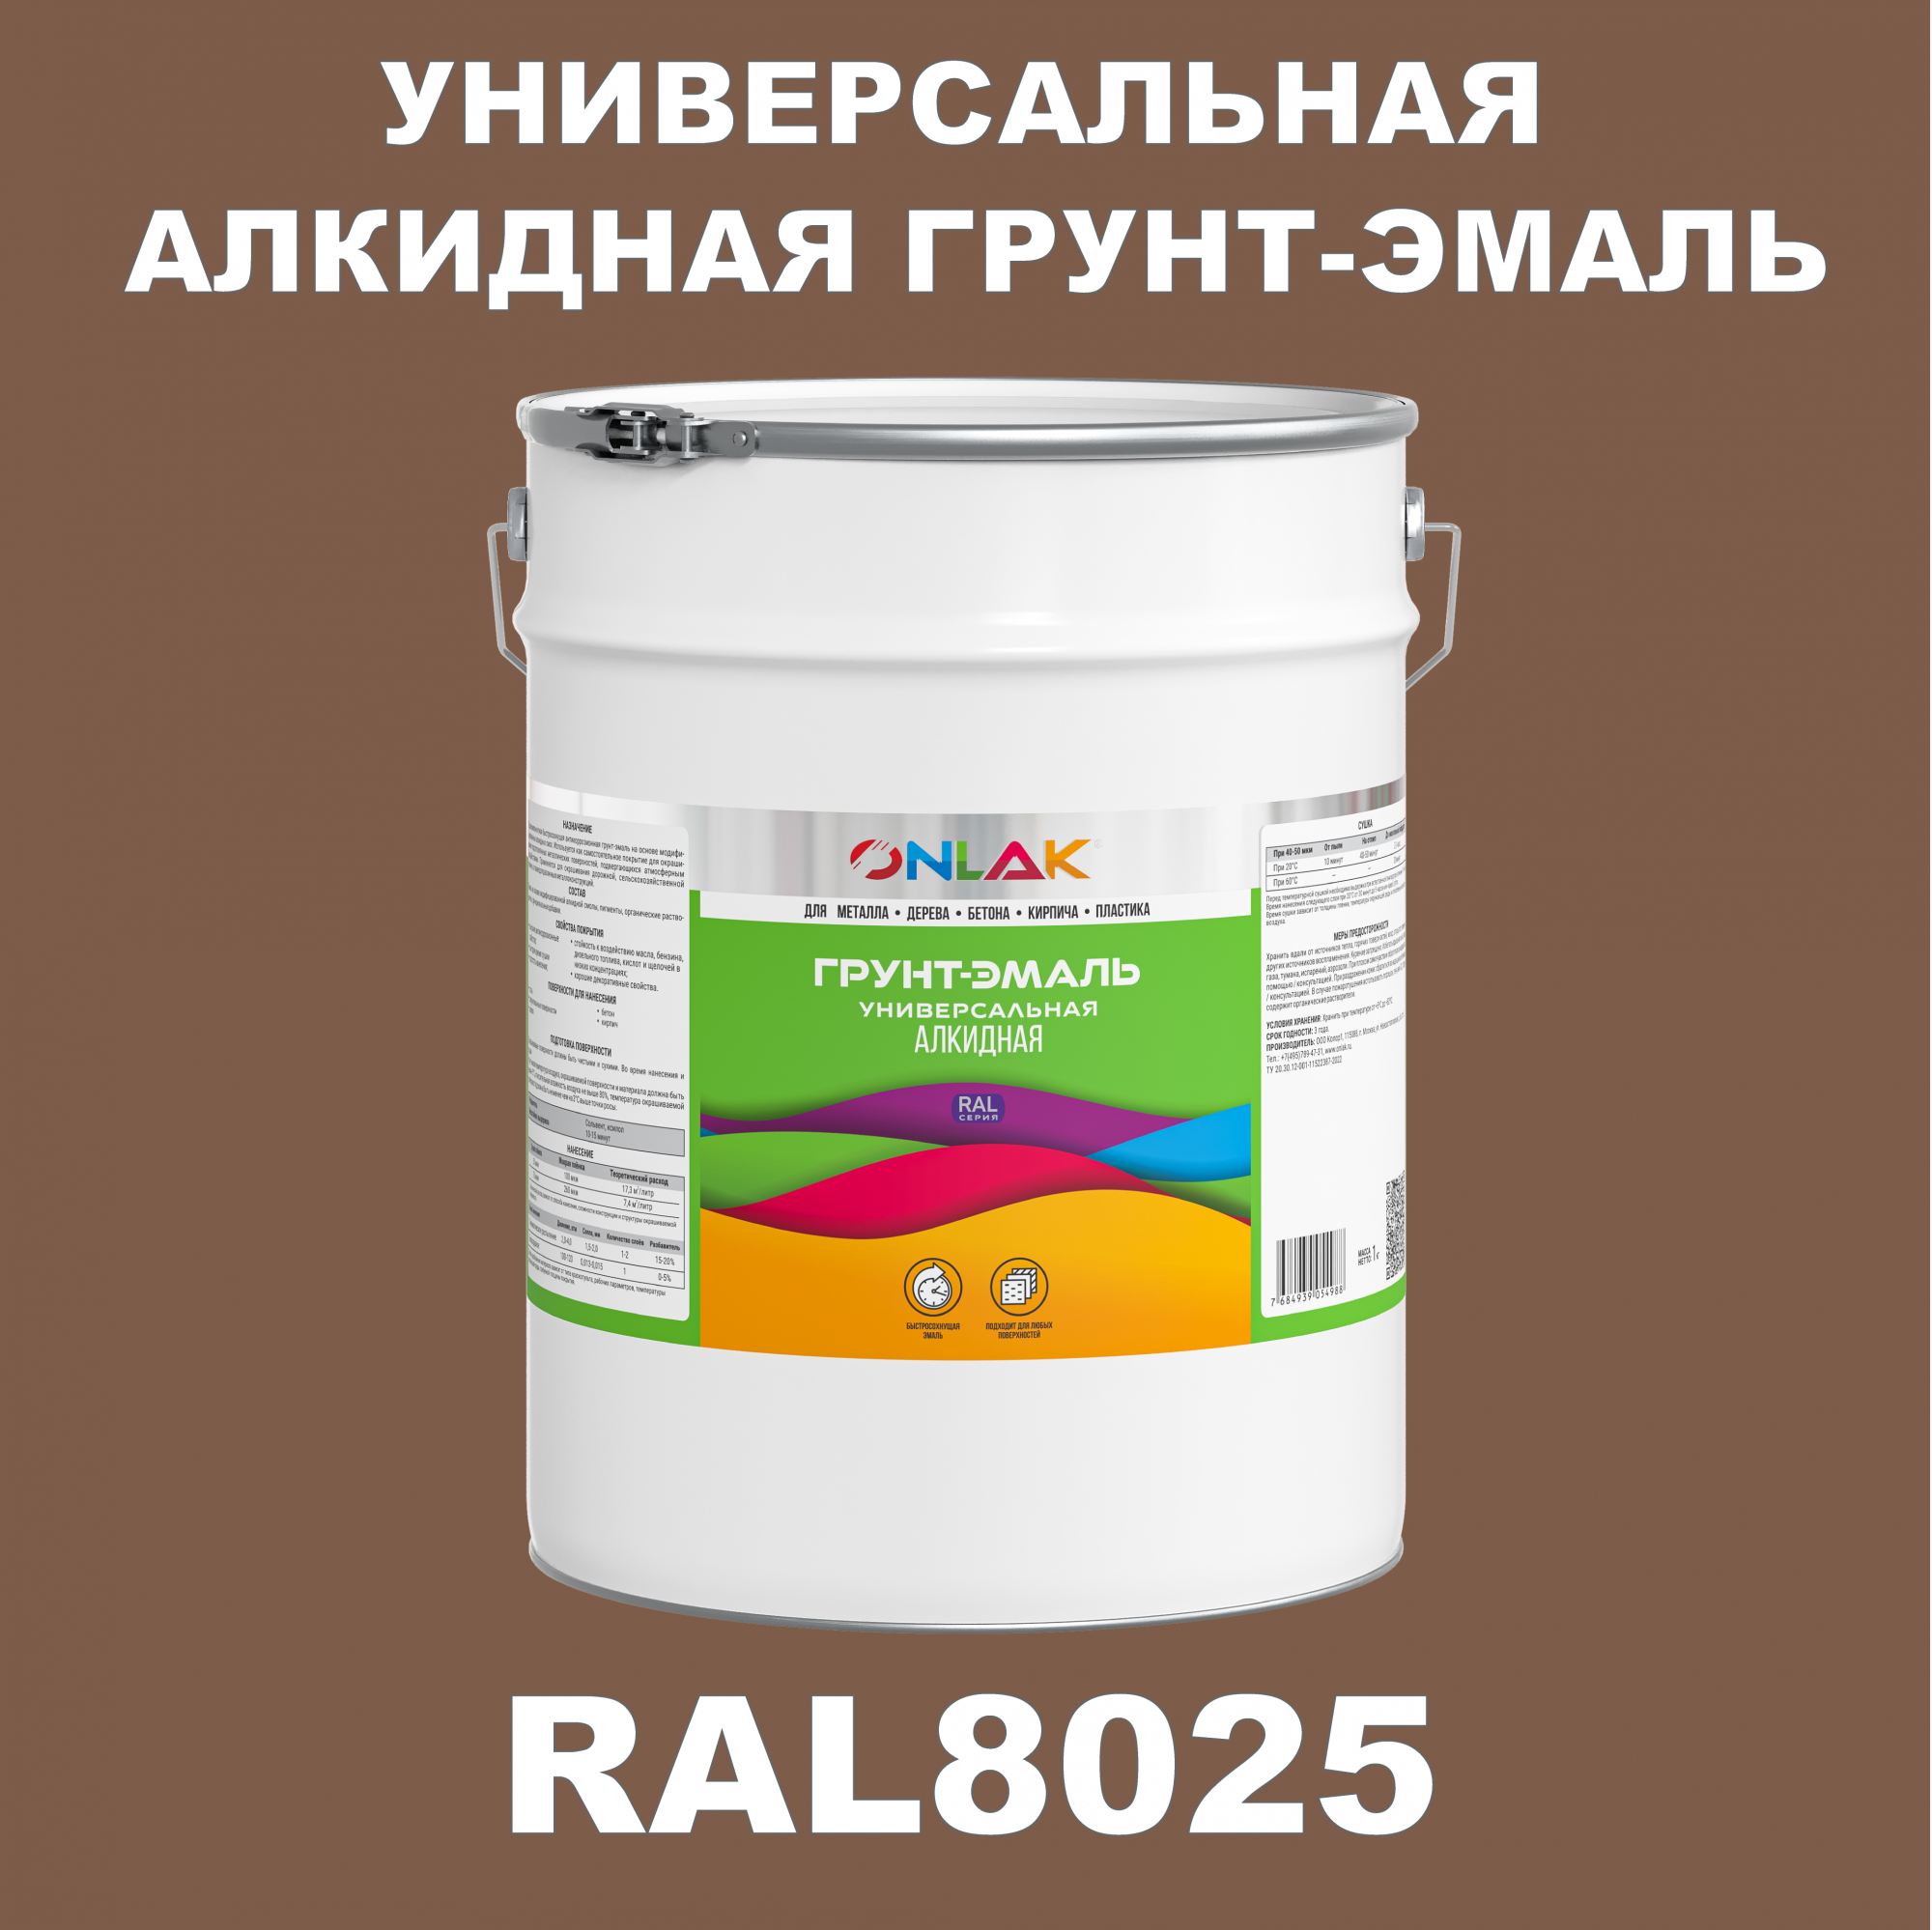 Грунт-эмаль ONLAK 1К RAL8025 антикоррозионная алкидная по металлу по ржавчине 20 кг грунт эмаль аэрозольная престиж 3в1 алкидная коричневая ral 8017 425 мл 0 425 кг